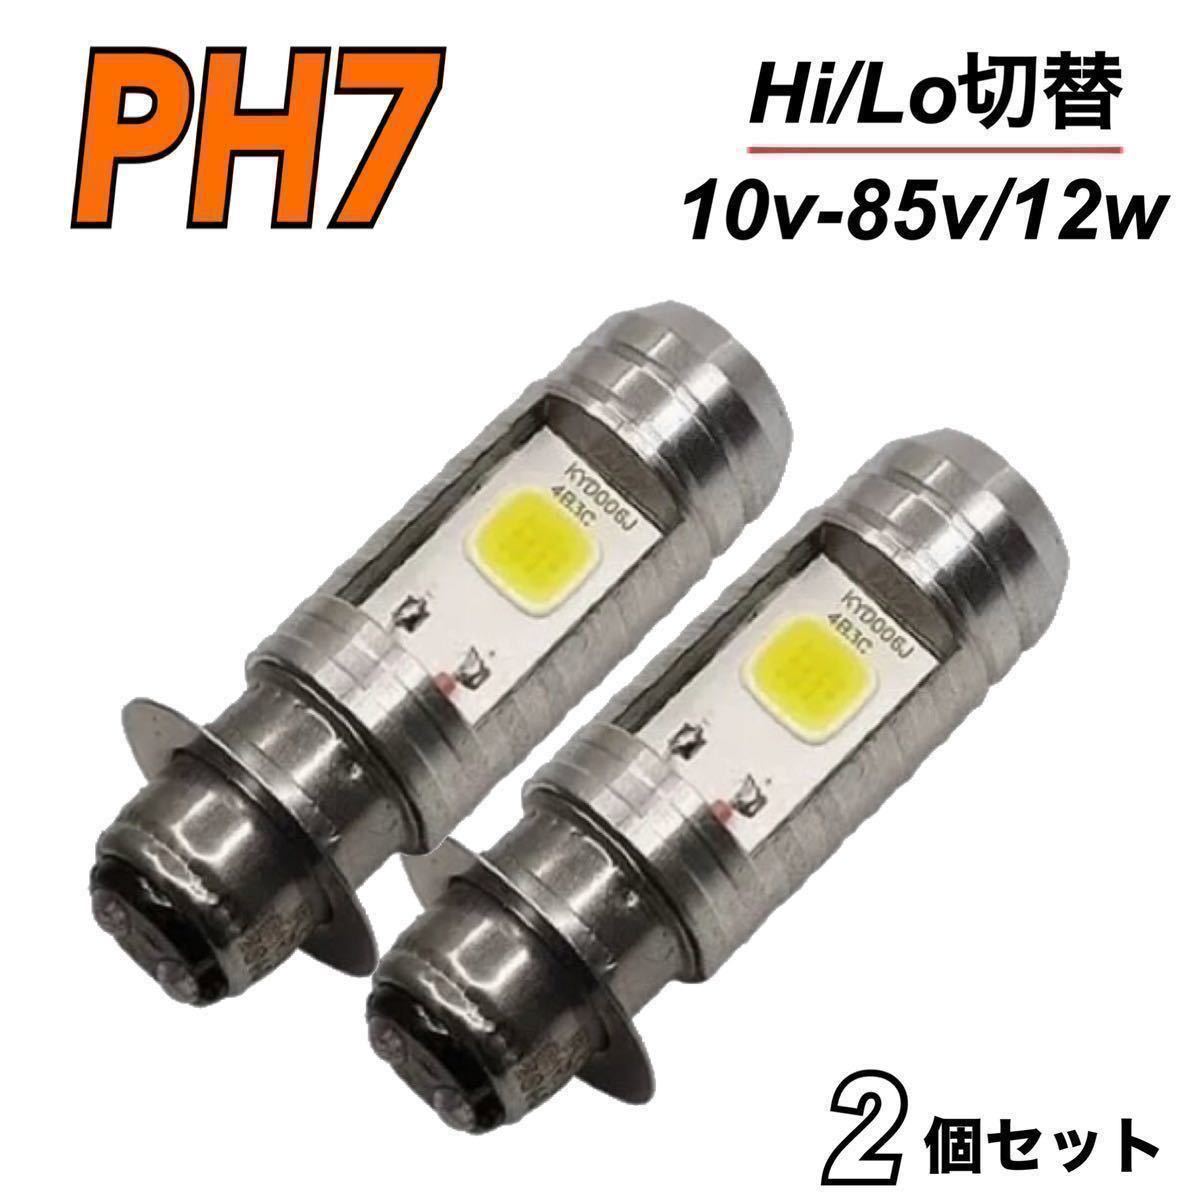 PH7 LED ヘッドライト ズーマーディオ モンキー ゴリラ 12v-80v